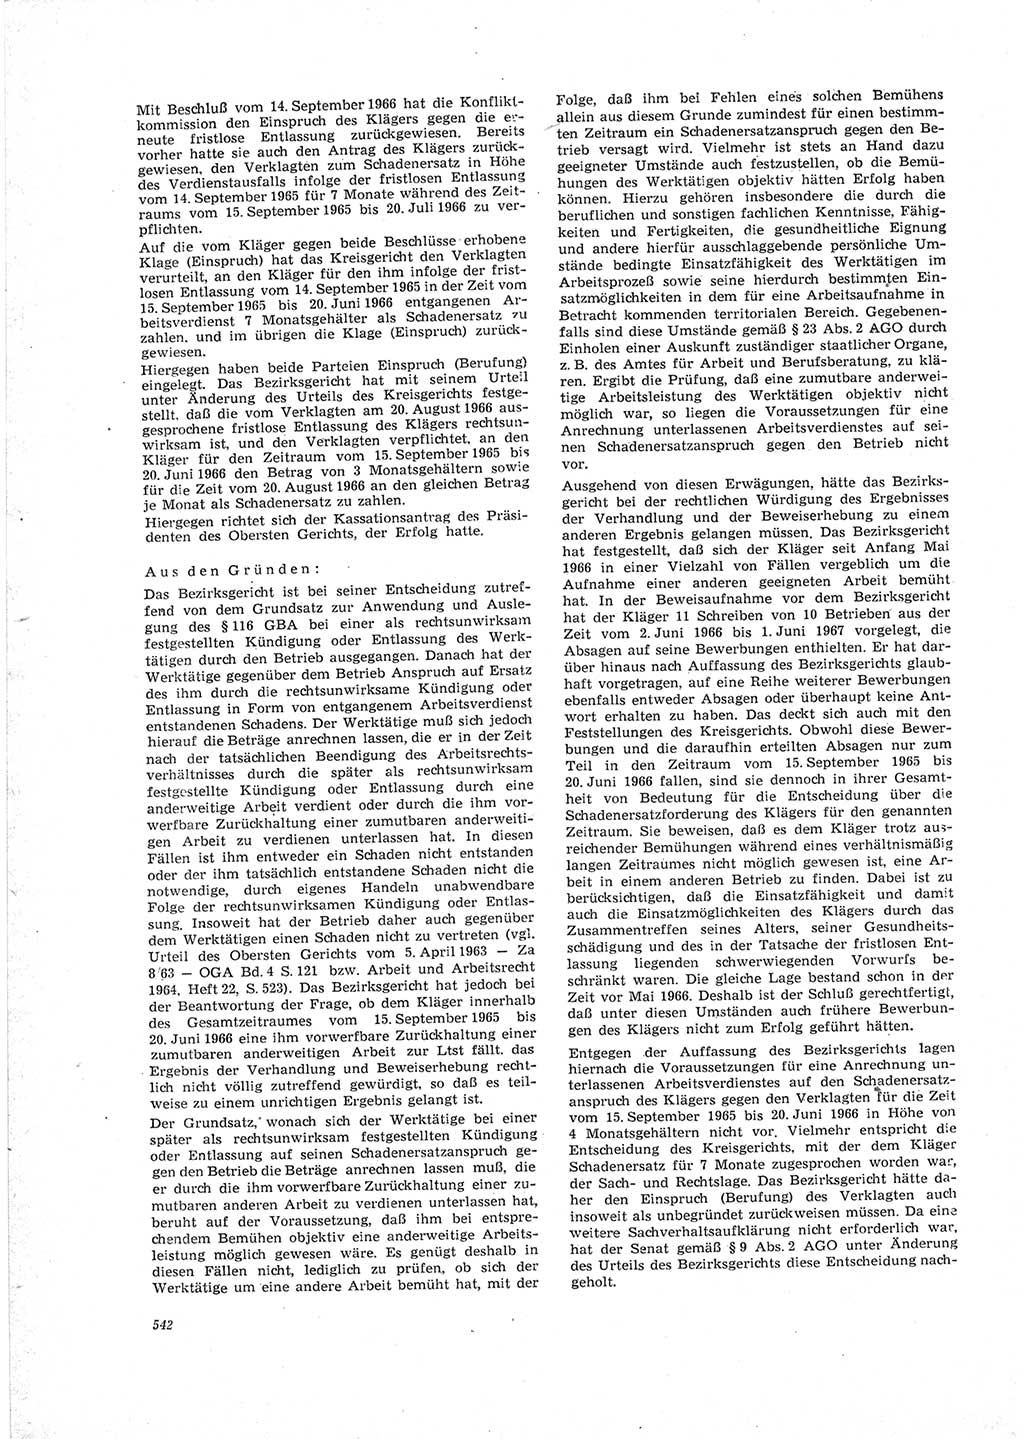 Neue Justiz (NJ), Zeitschrift für Recht und Rechtswissenschaft [Deutsche Demokratische Republik (DDR)], 23. Jahrgang 1969, Seite 542 (NJ DDR 1969, S. 542)